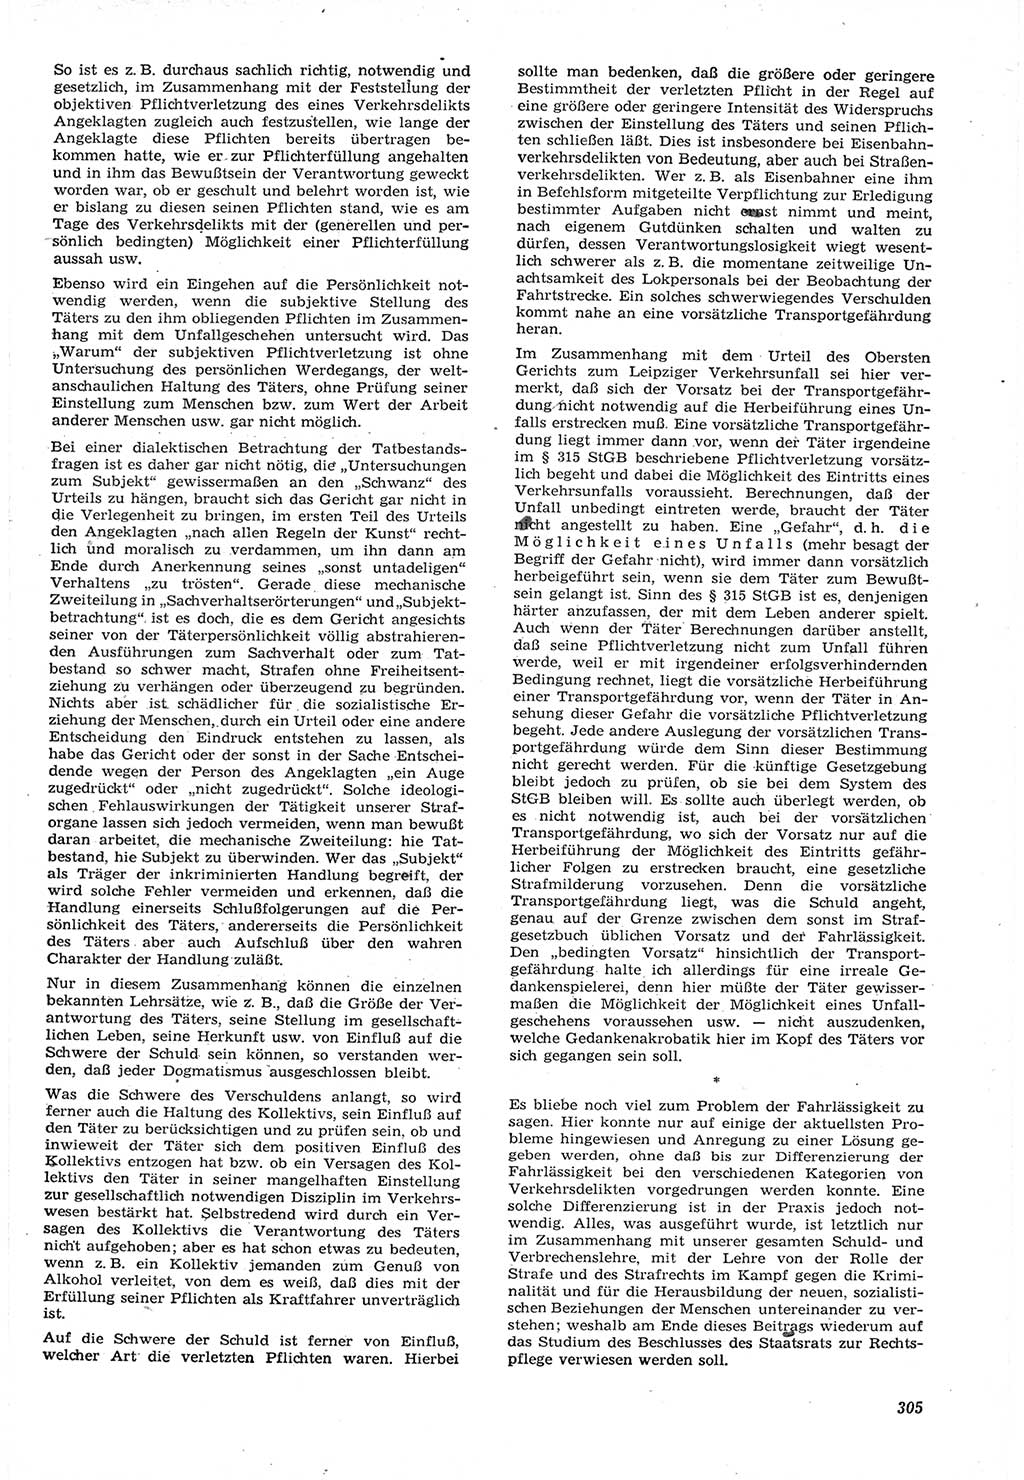 Neue Justiz (NJ), Zeitschrift für Recht und Rechtswissenschaft [Deutsche Demokratische Republik (DDR)], 15. Jahrgang 1961, Seite 305 (NJ DDR 1961, S. 305)